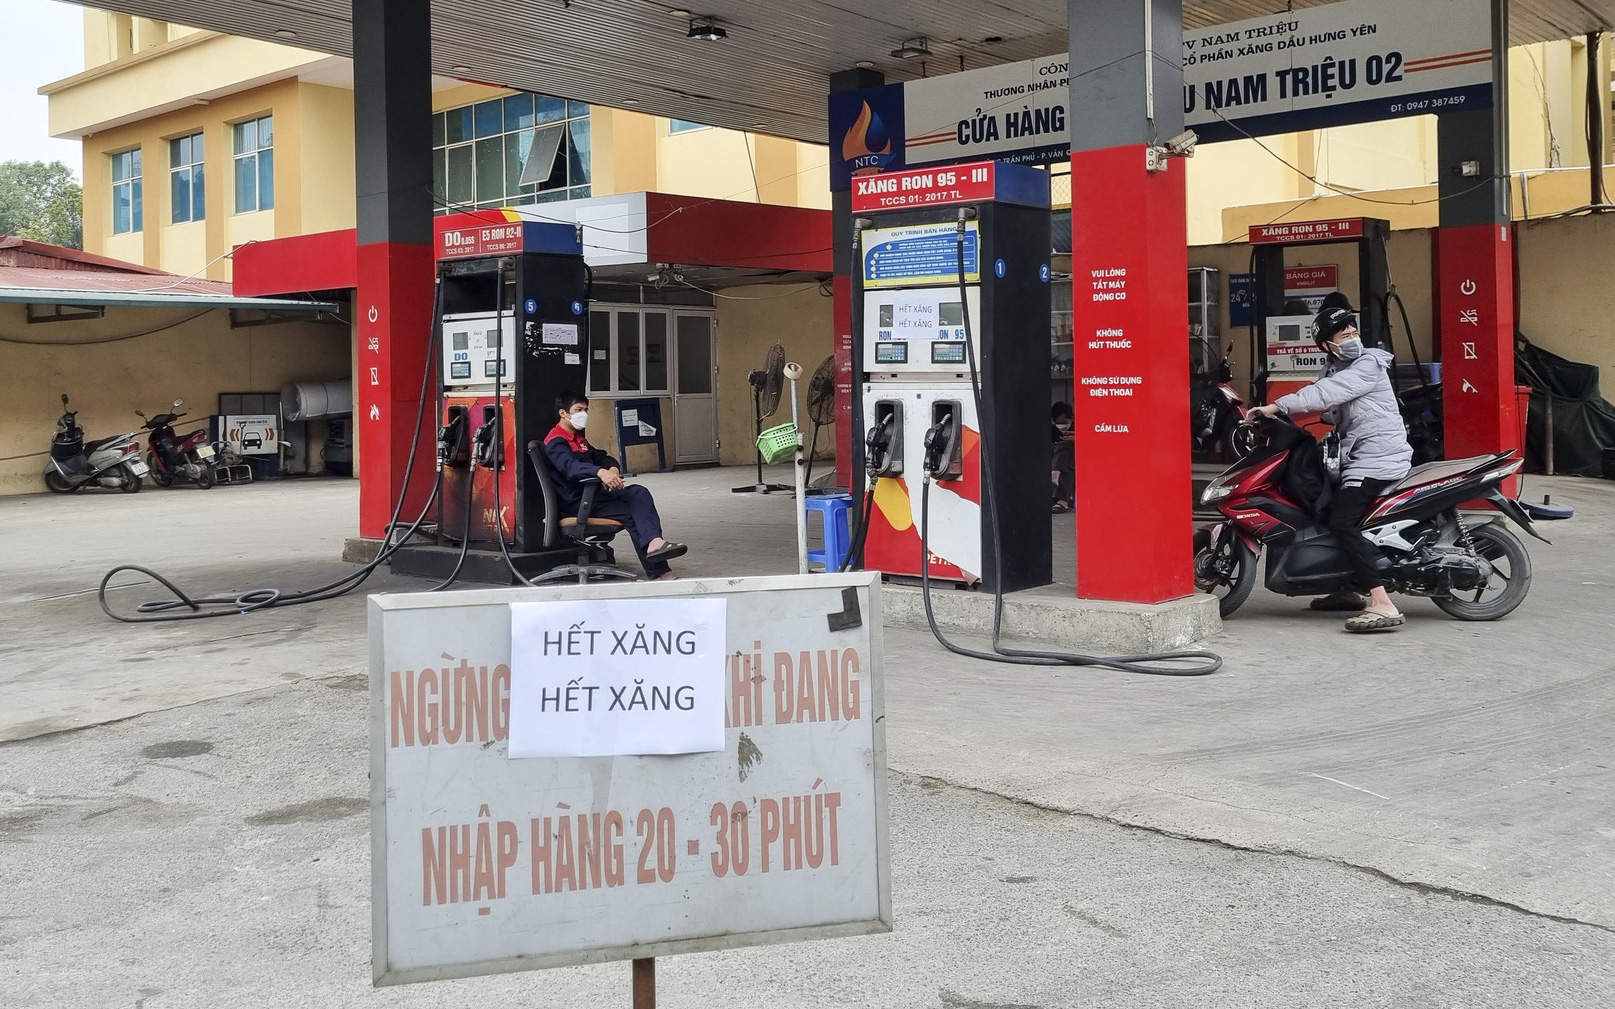 Nhiều cây xăng tại Hà Nội treo biển "hết xăng" trước giờ điều chỉnh giá 